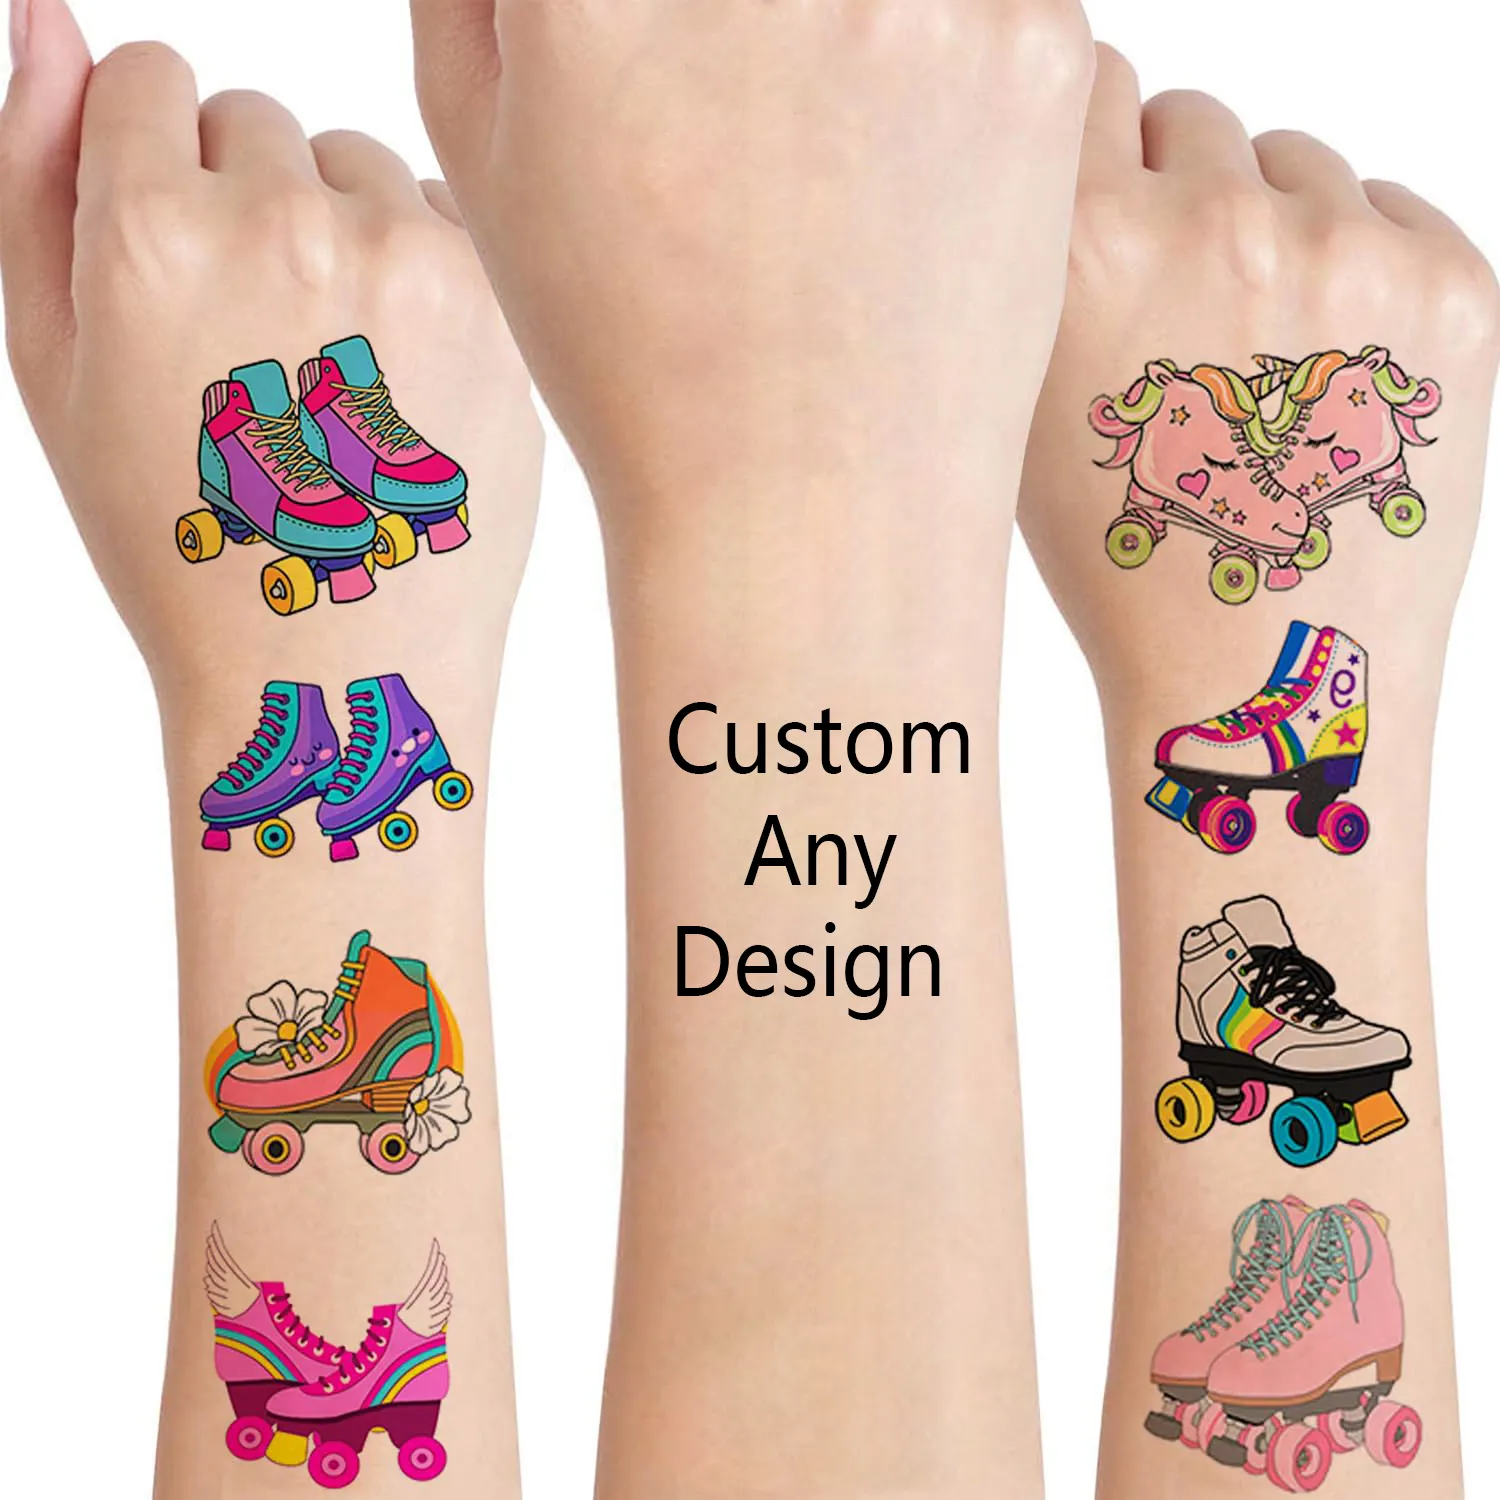 Autocollants tatouages temporaires imperméables personnalisés pour enfants, corps de la main